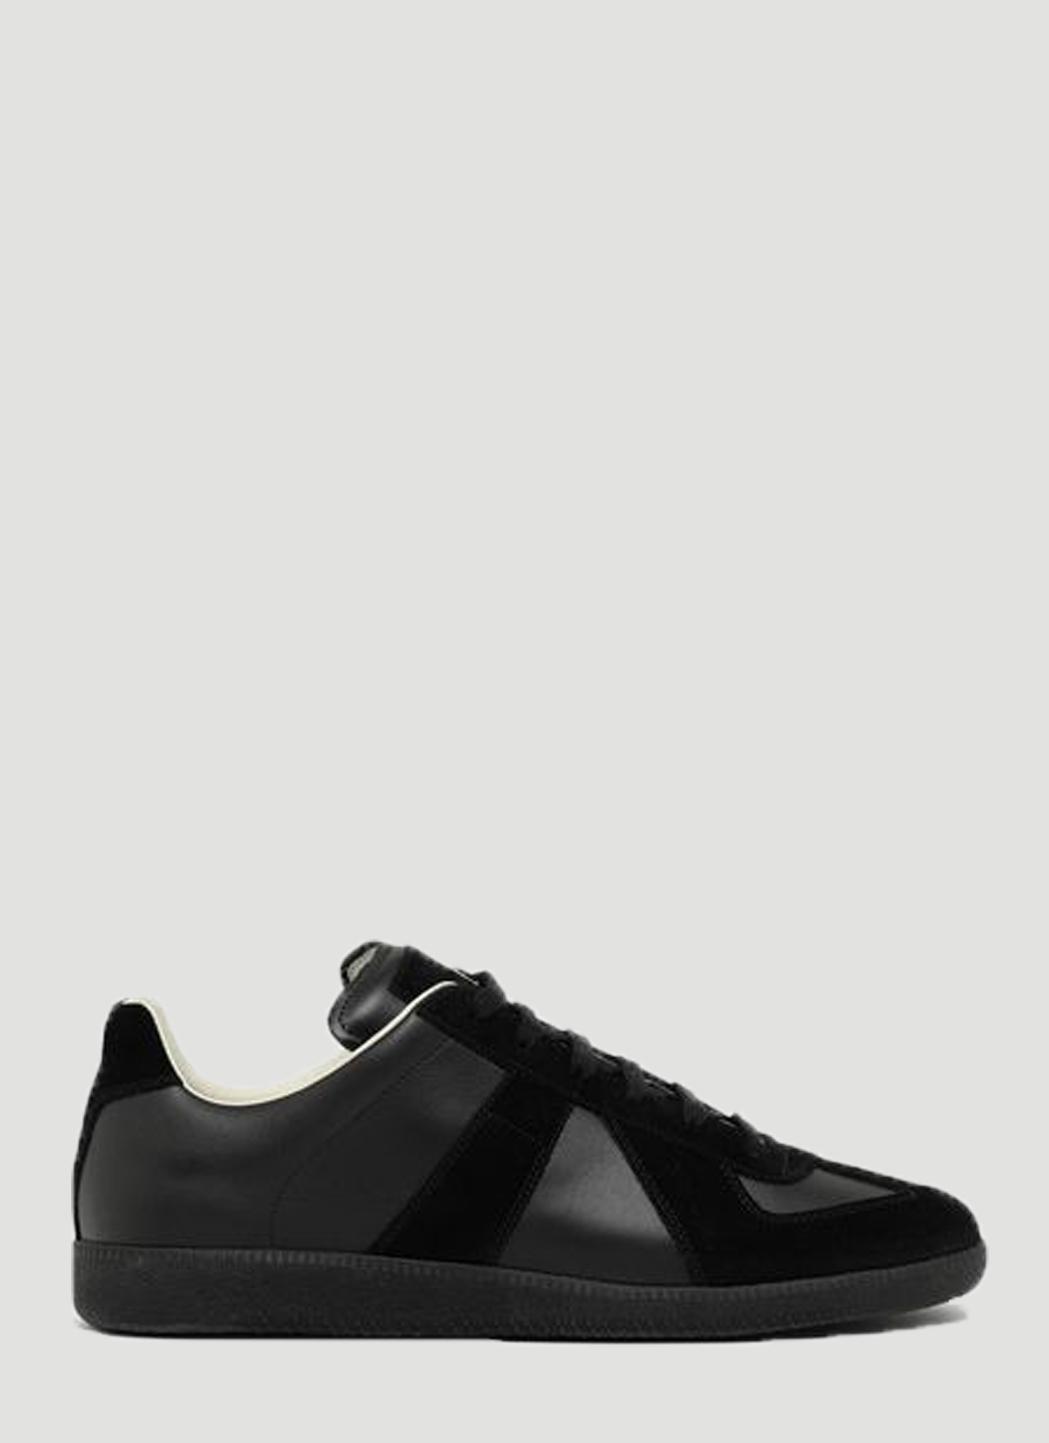 Maison Margiela Replica Sneakers in Black for Men | Lyst